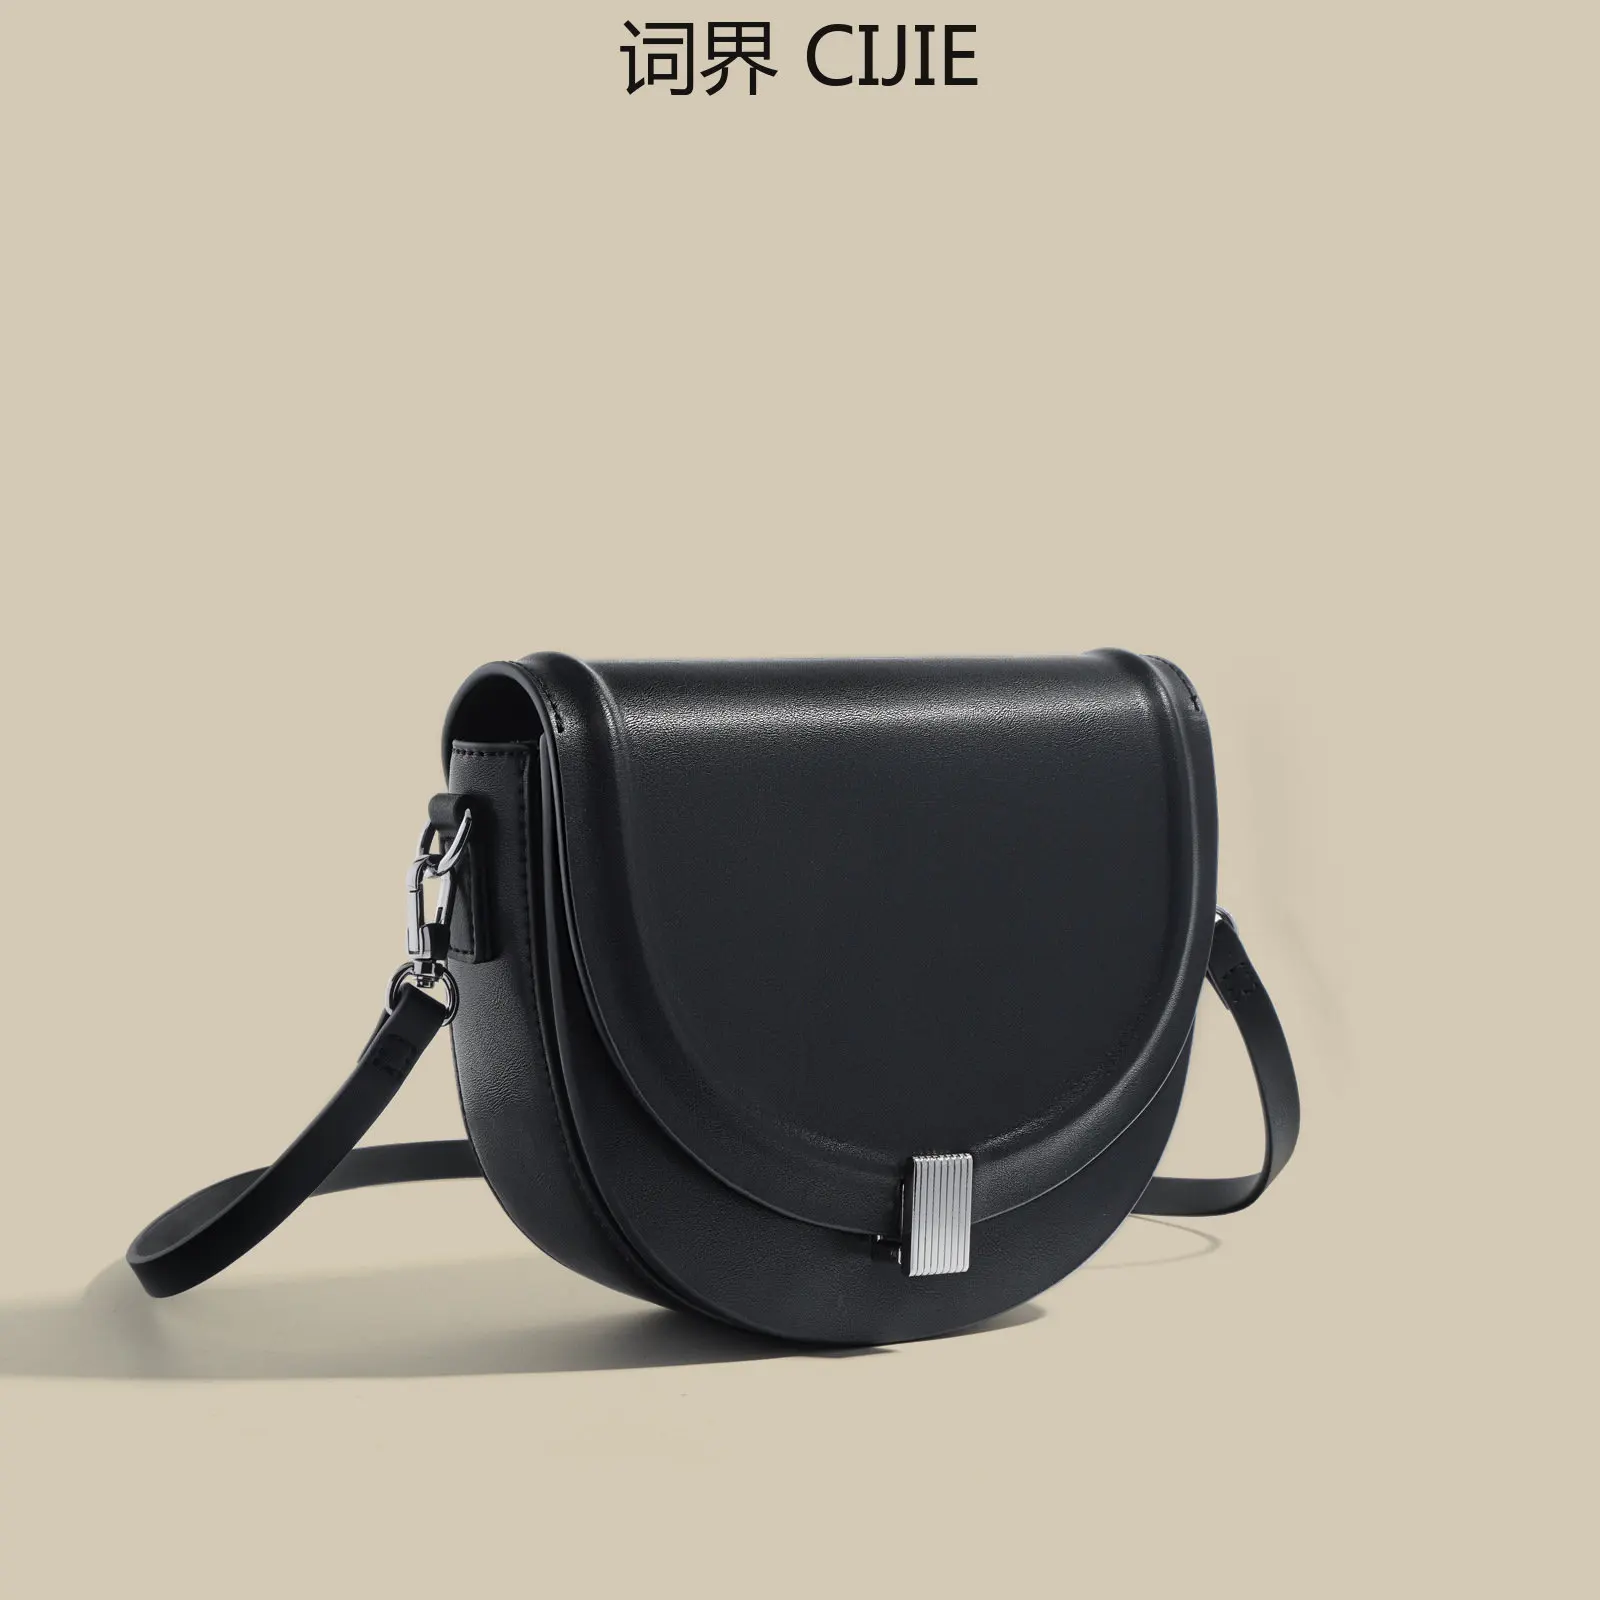 CIJIE Saddle Genuine Leather Women's Bag New Fashion All-Match Shoulder Messenger Bag